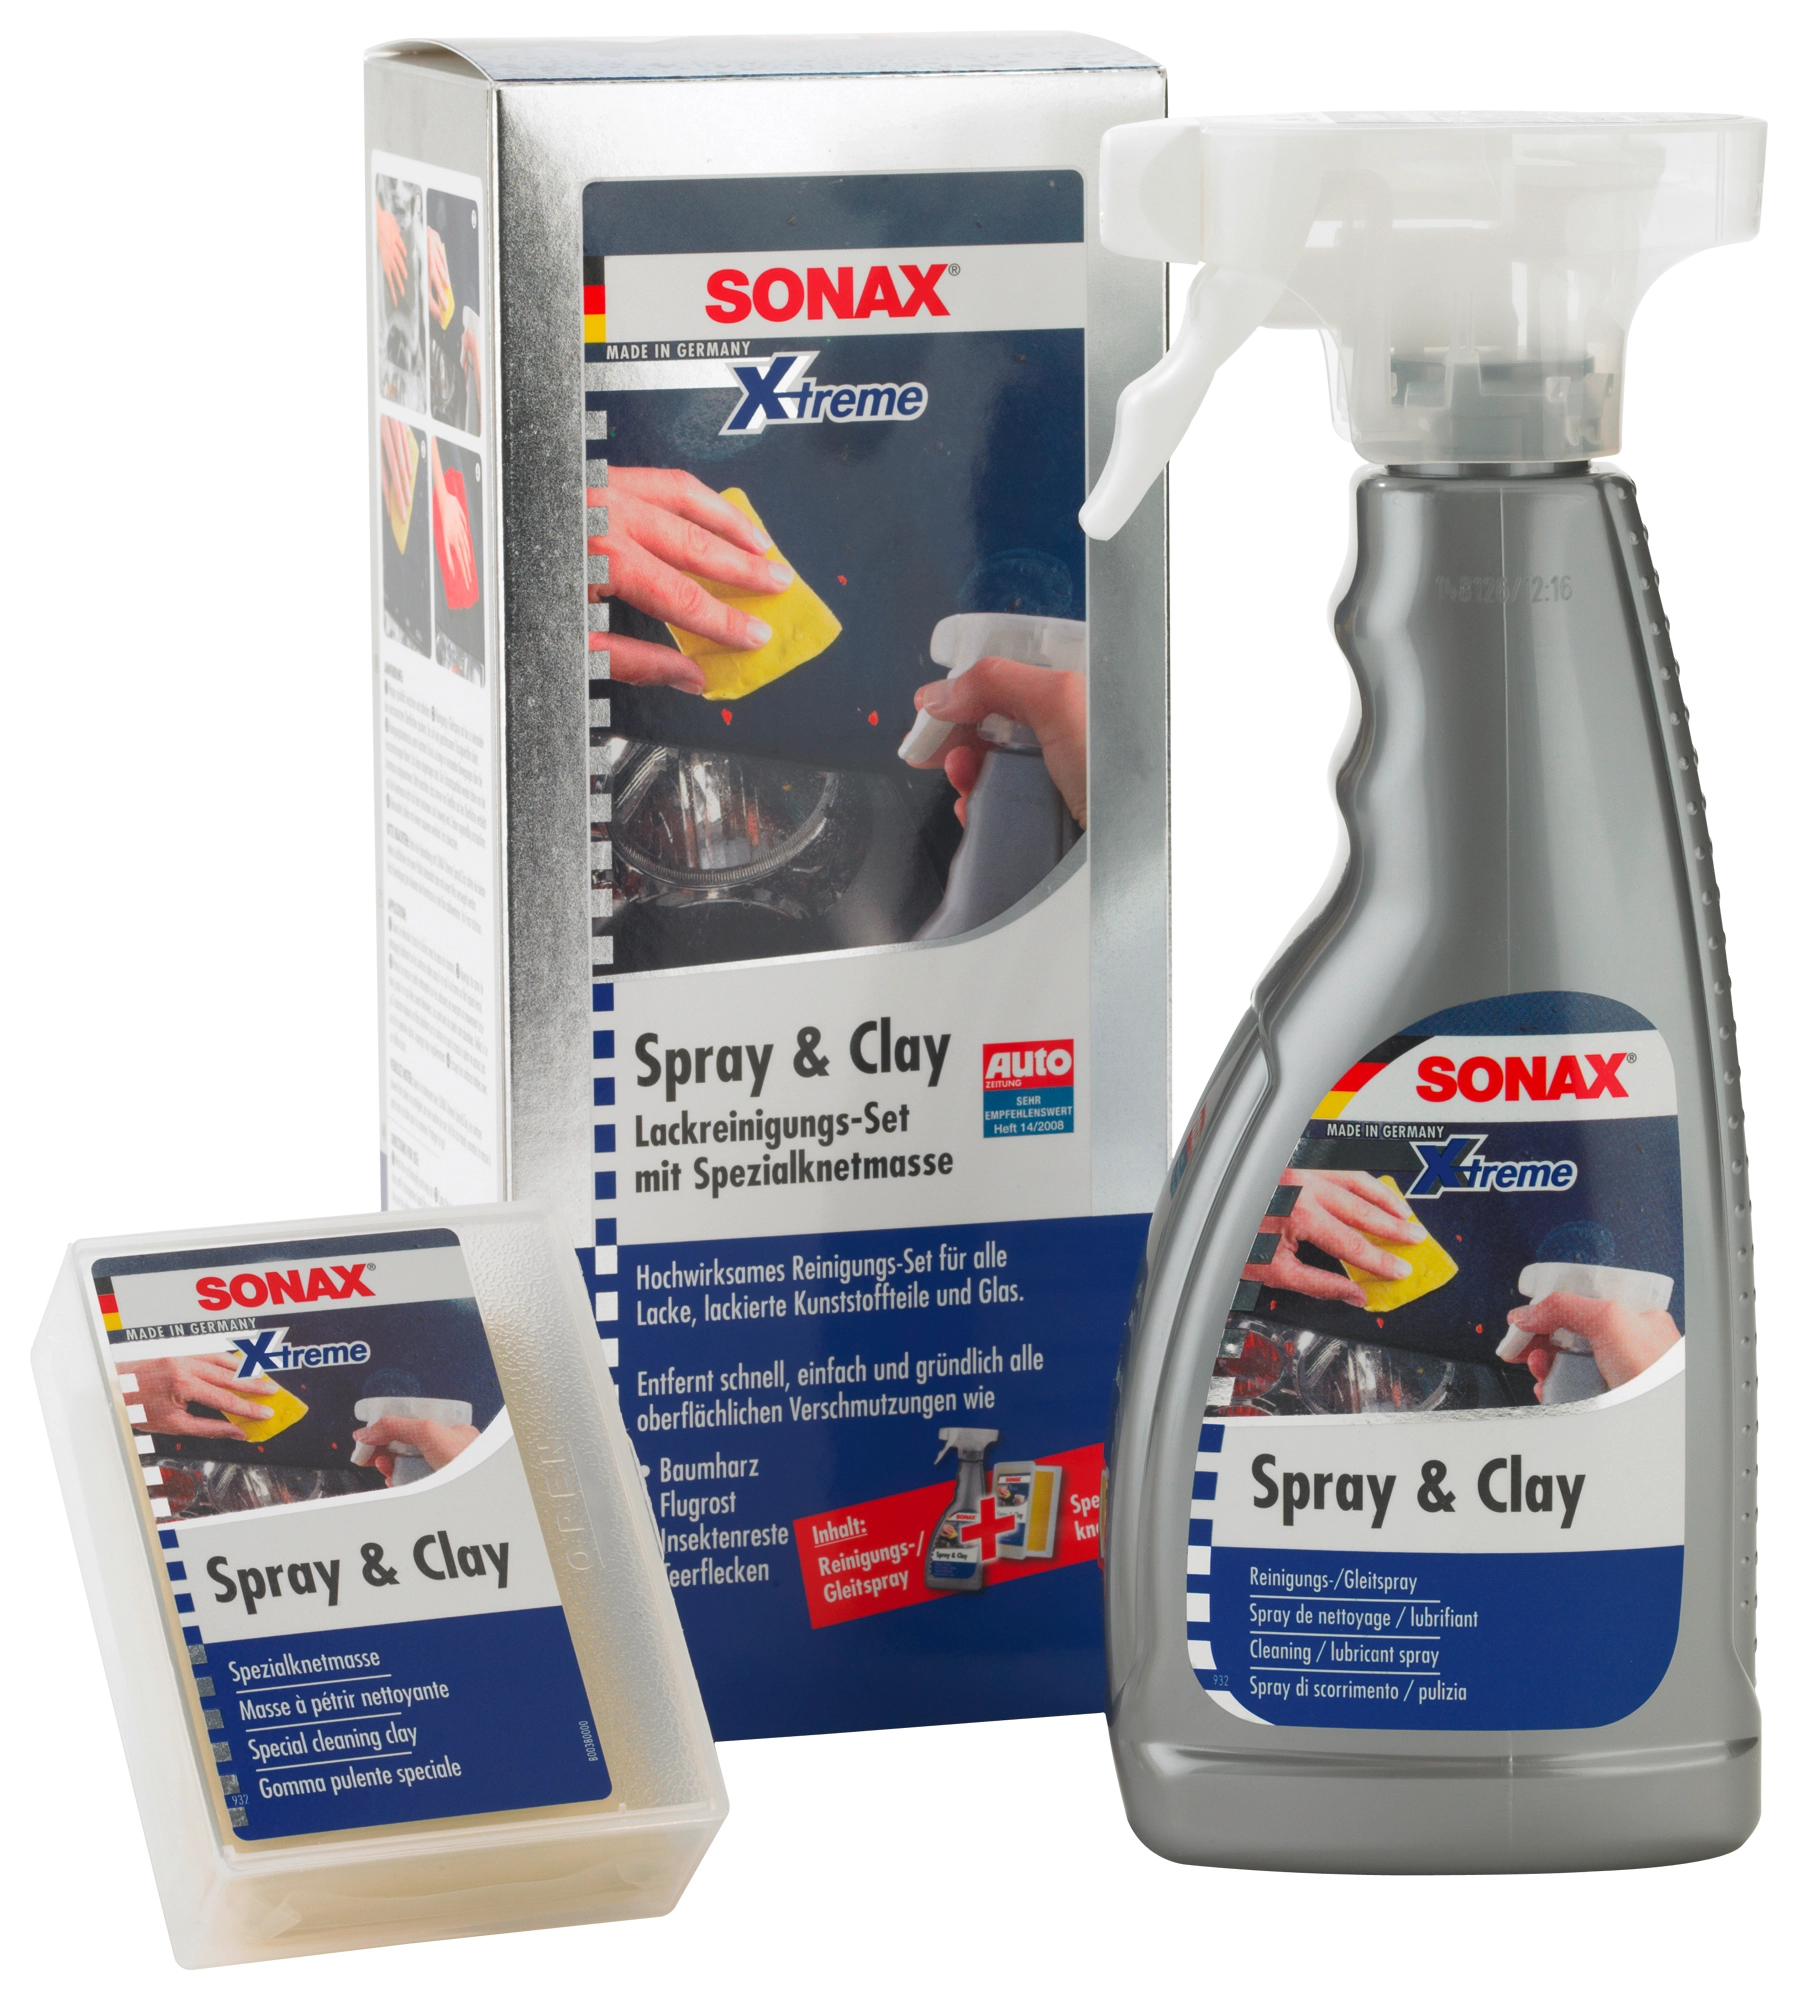 Sonax Xtreme Spray & Clay kaufen bei OBI